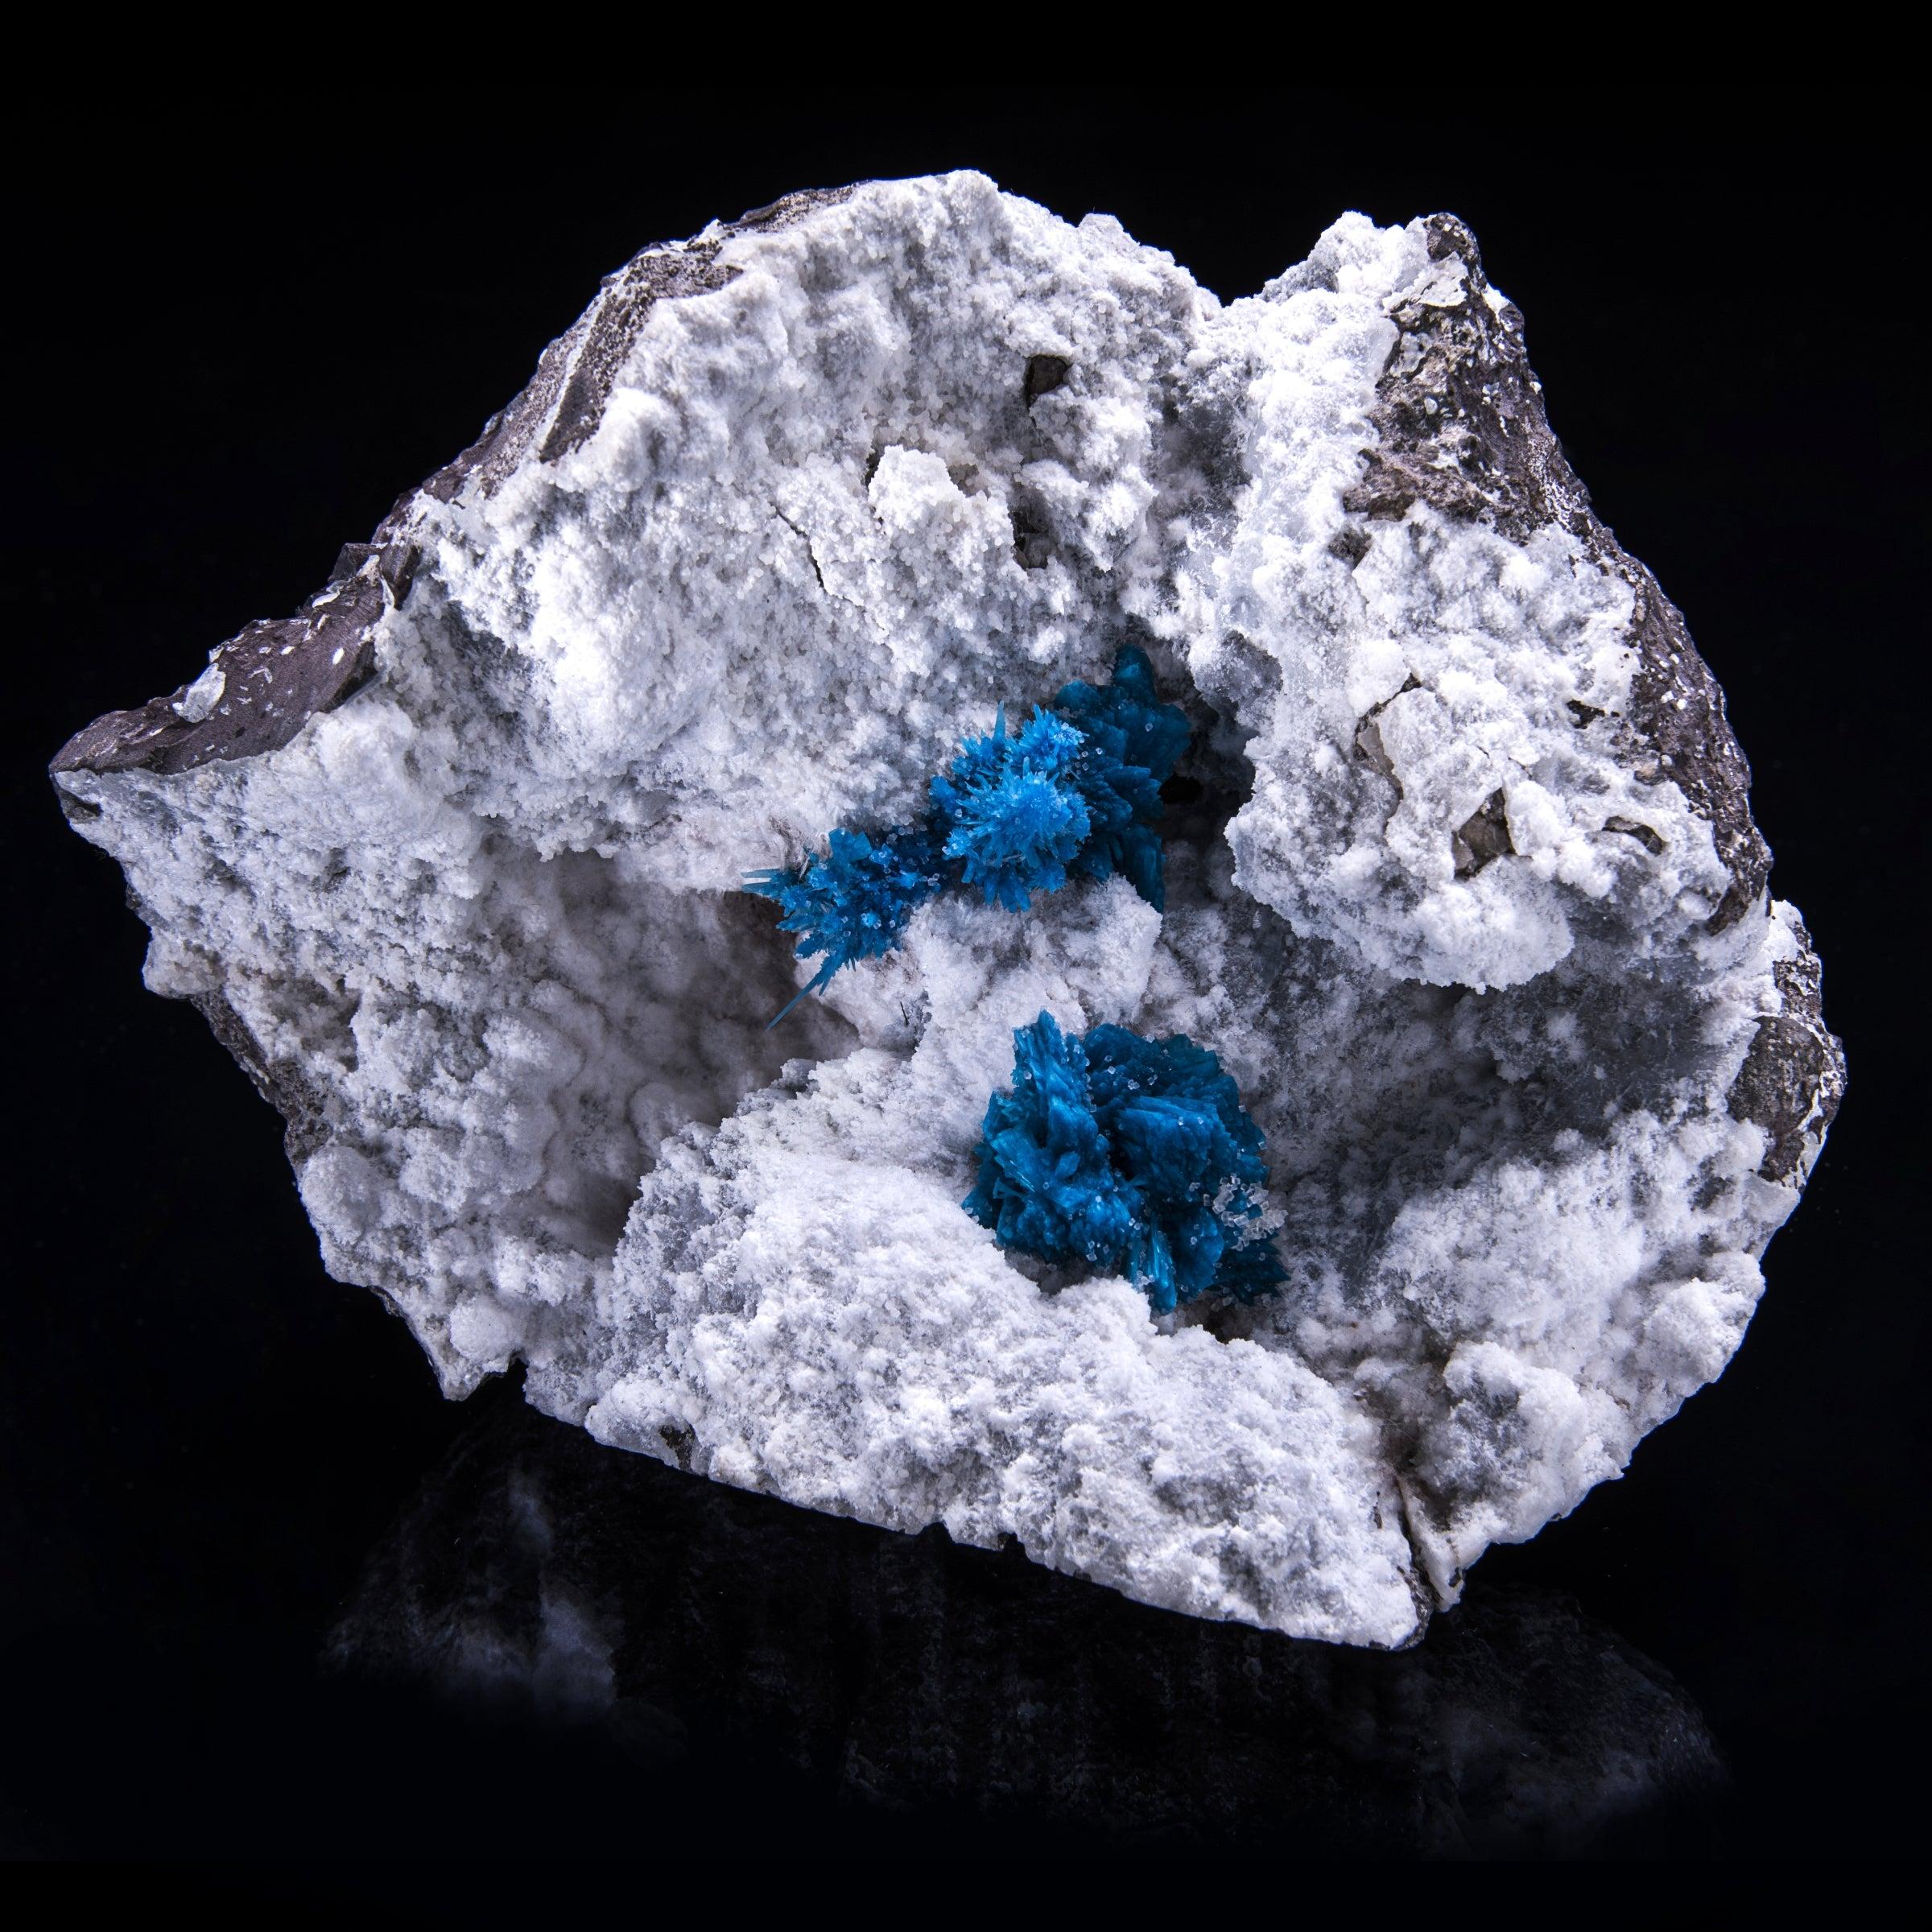 Punna, Inde

Un spécimen absolument époustouflant provenant de la mine de Punna, en Inde. Whiting présente les bleus étonnants de la cavansite et de la pentagonite sur une matrice blanche créant un contraste saisissant. Une découverte incroyable car